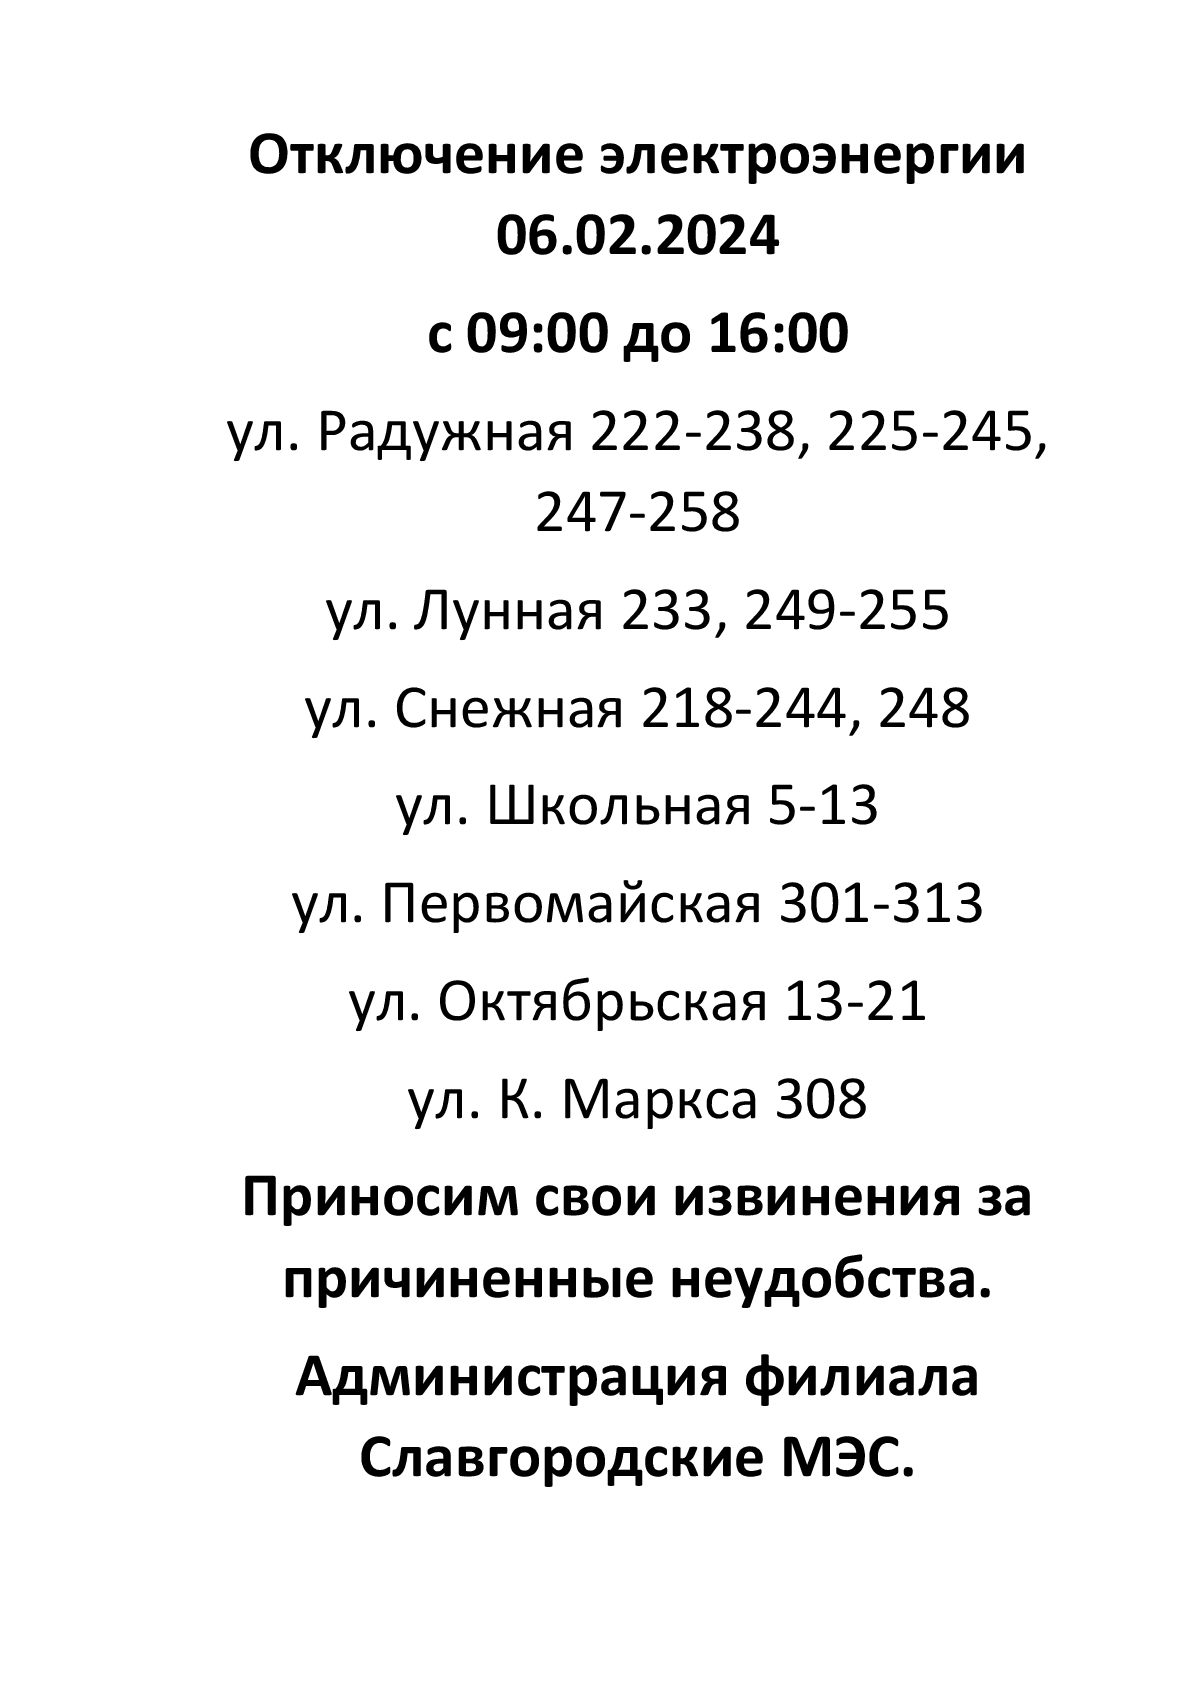 Отключение электроэнергии по г. Славгороду 06.02.2024.